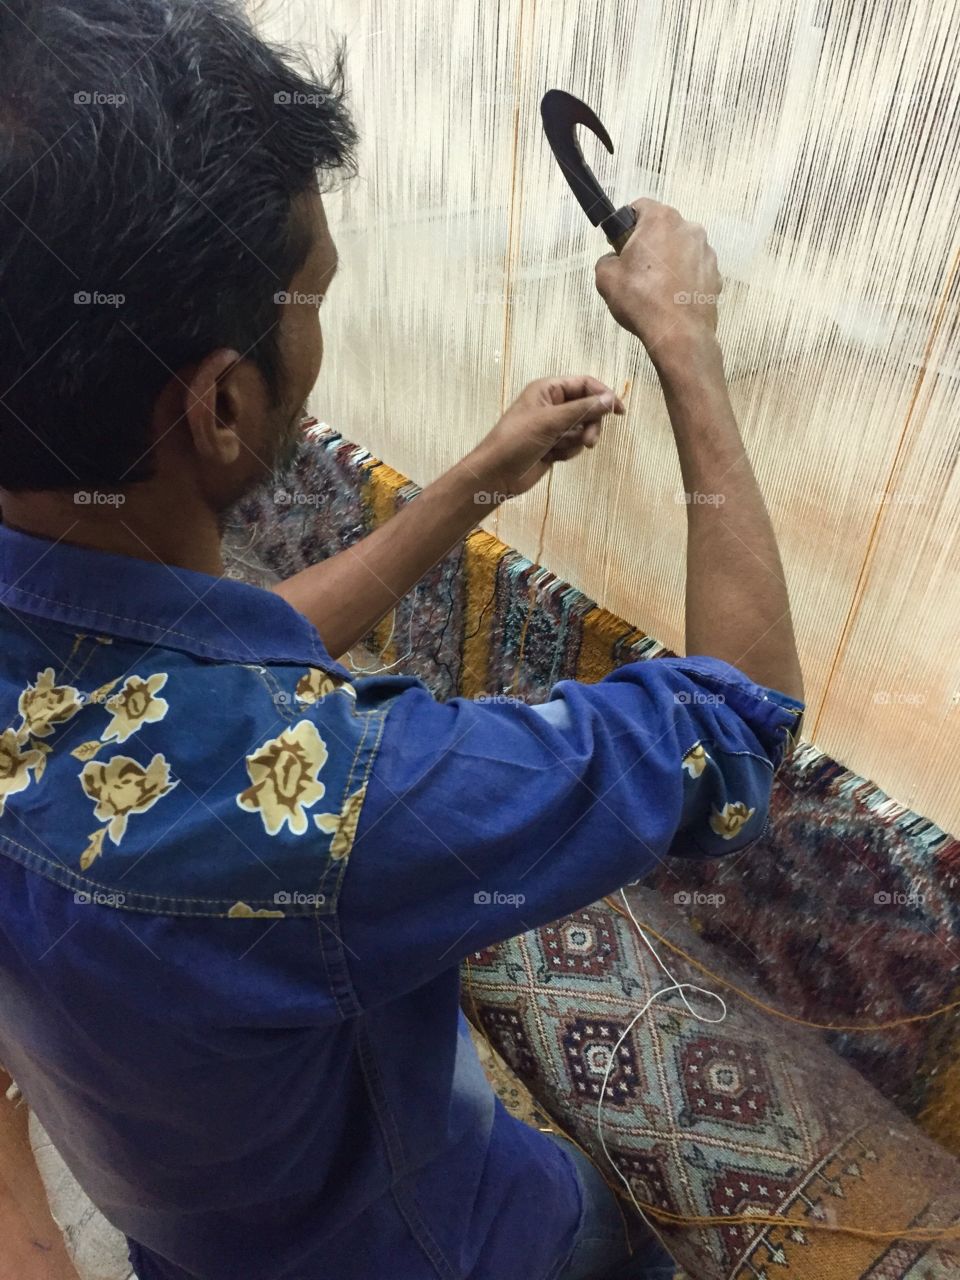 Rug maker in Agra, India